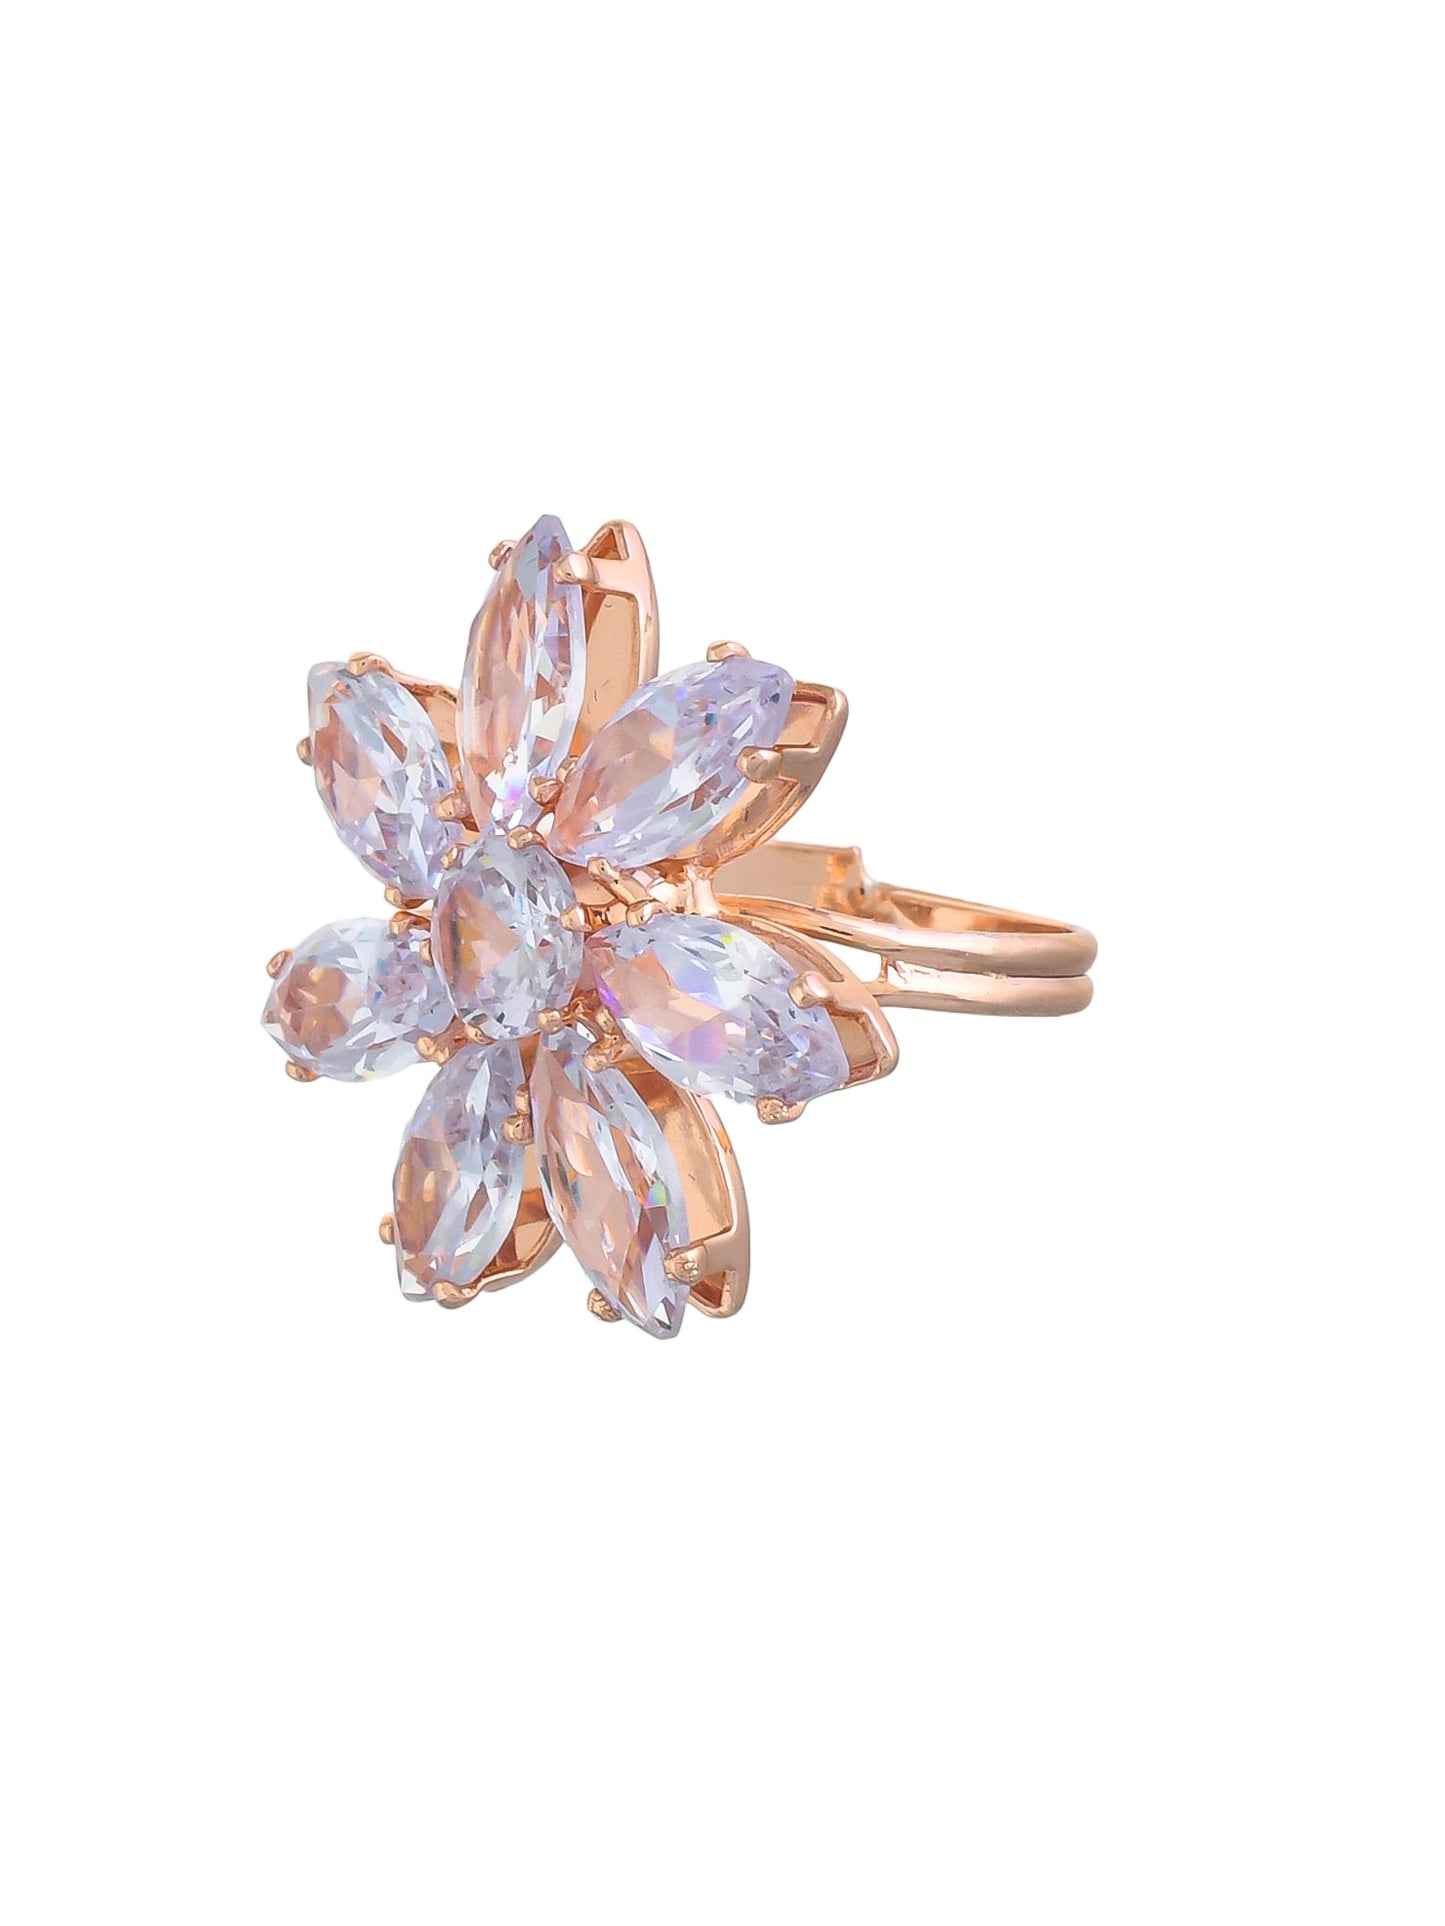 American Diamond Ring Cocktail rings | Flower design rings for girls& women